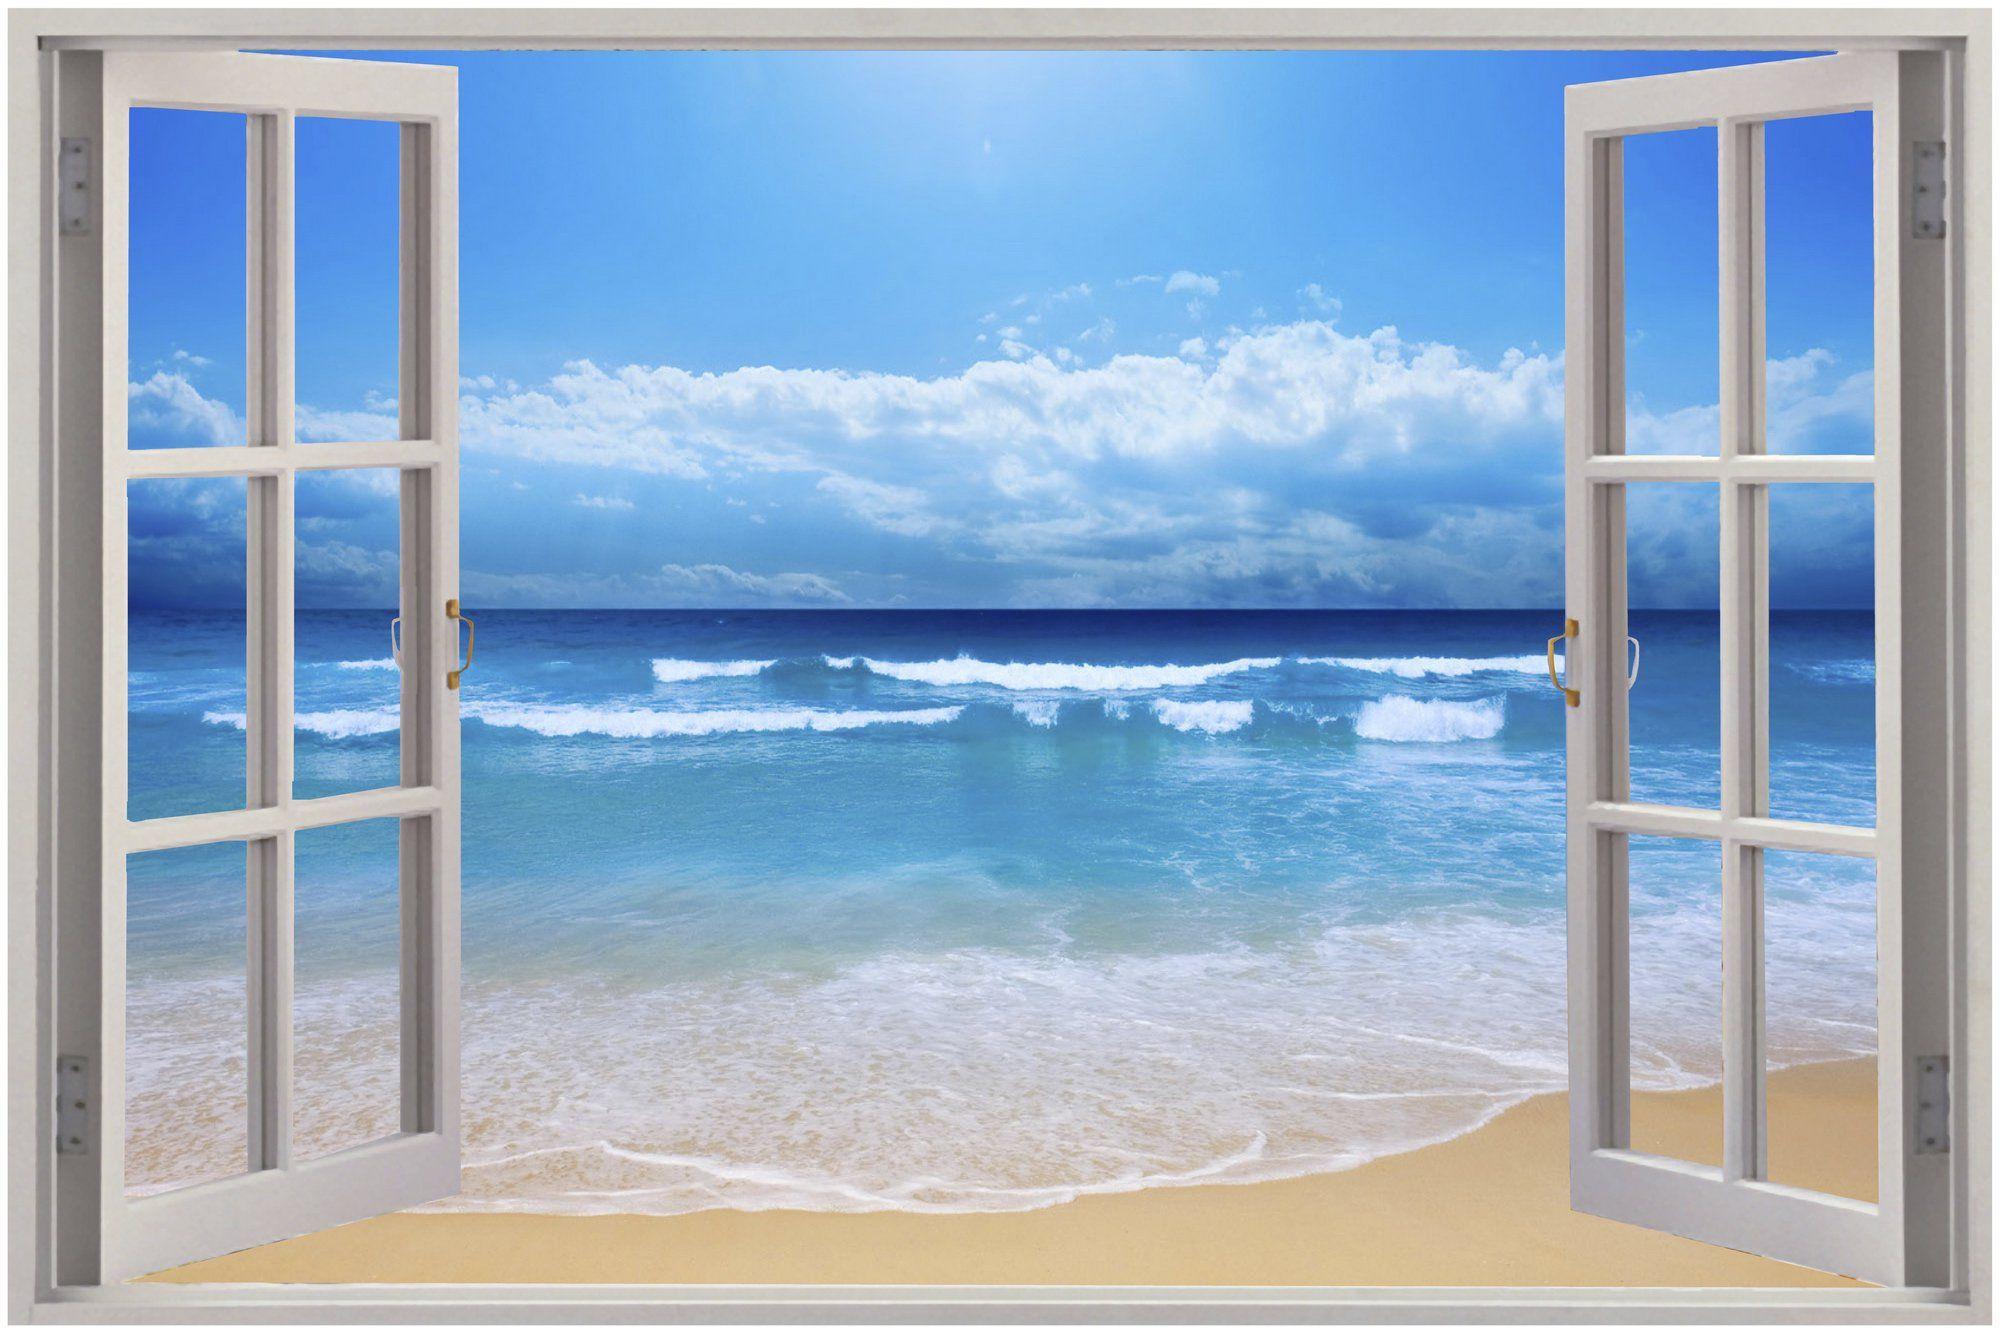 2000x1333 Hình nền cửa sổ nhìn ra bãi biển